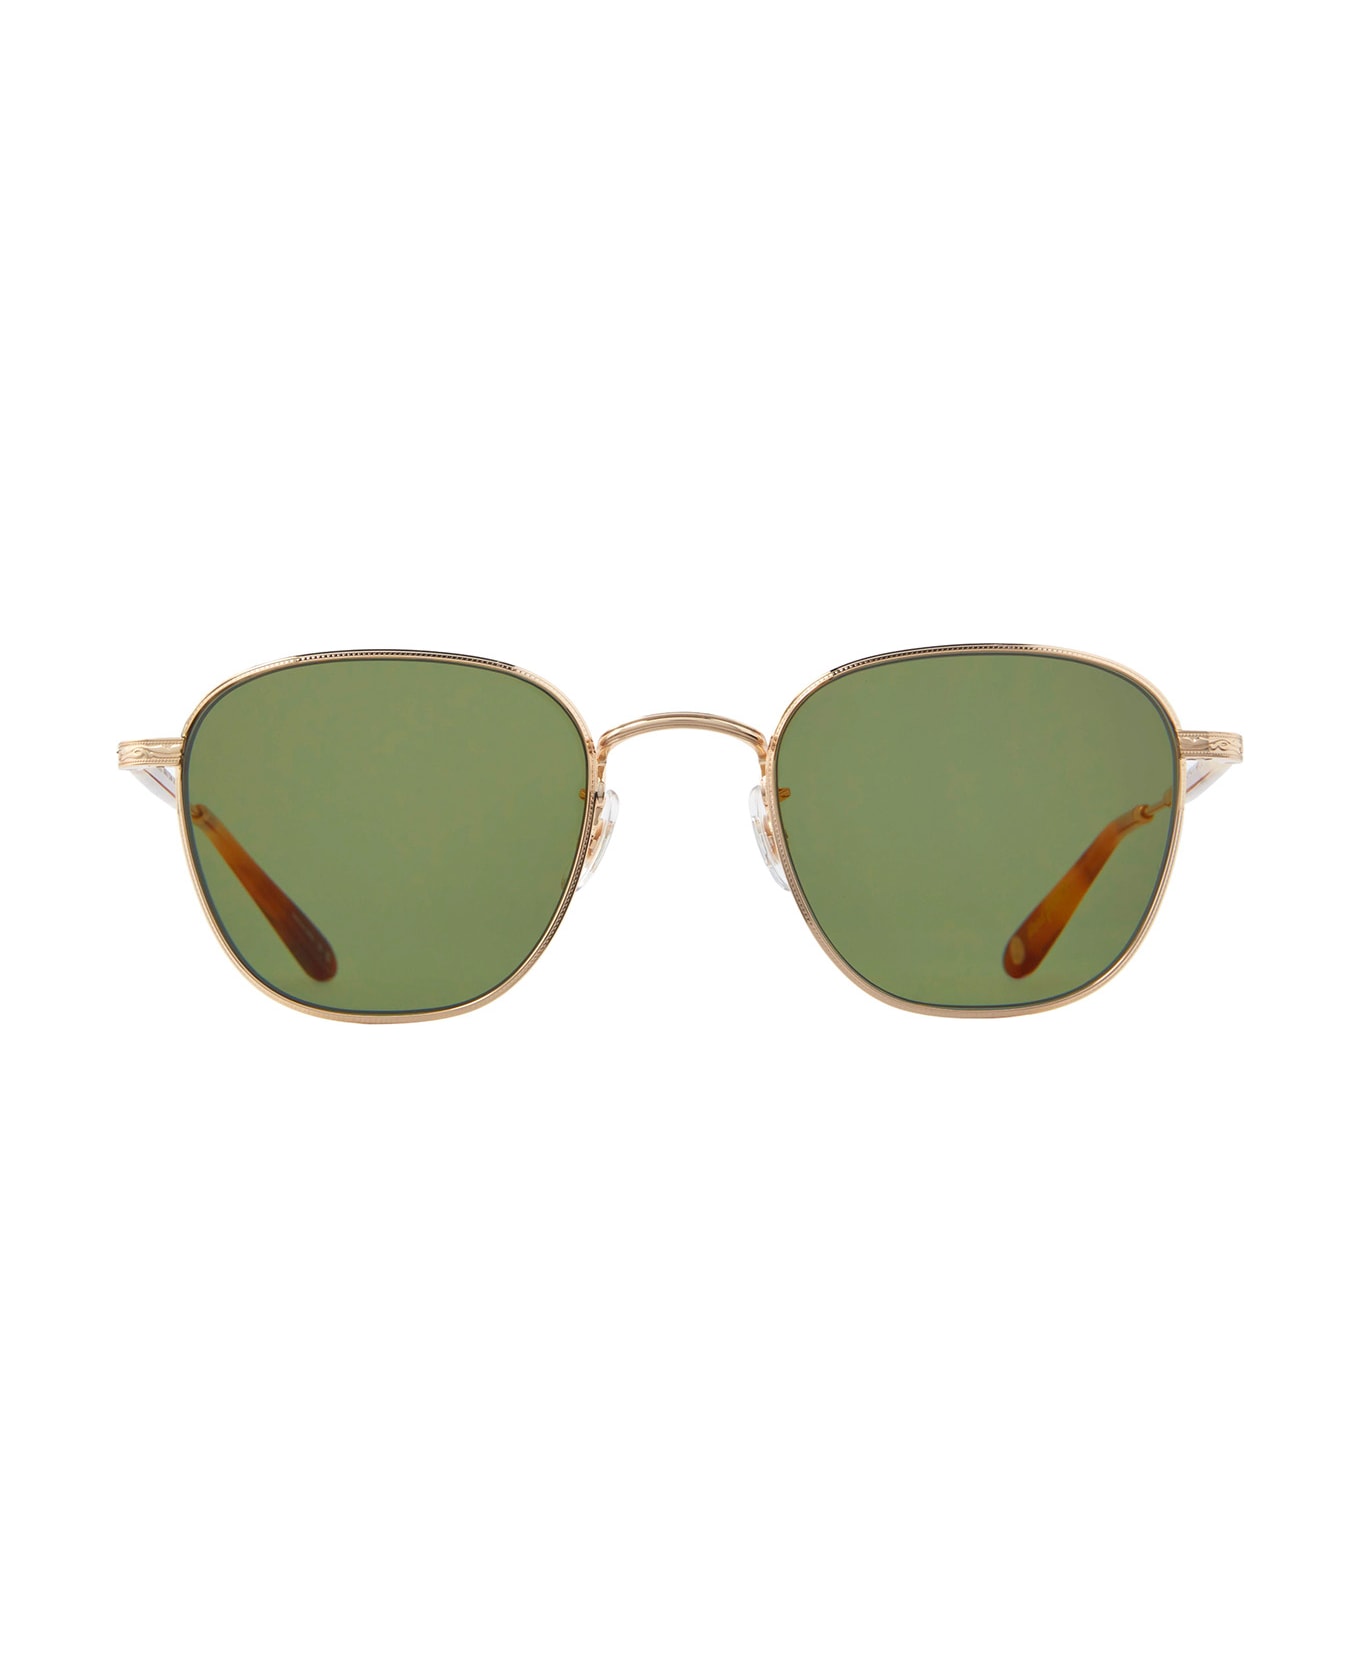 Garrett Leight World Sun Gold-ember Tortoise/semi-flat Green Sunglasses - Gold-Ember Tortoise/Semi-Flat Green